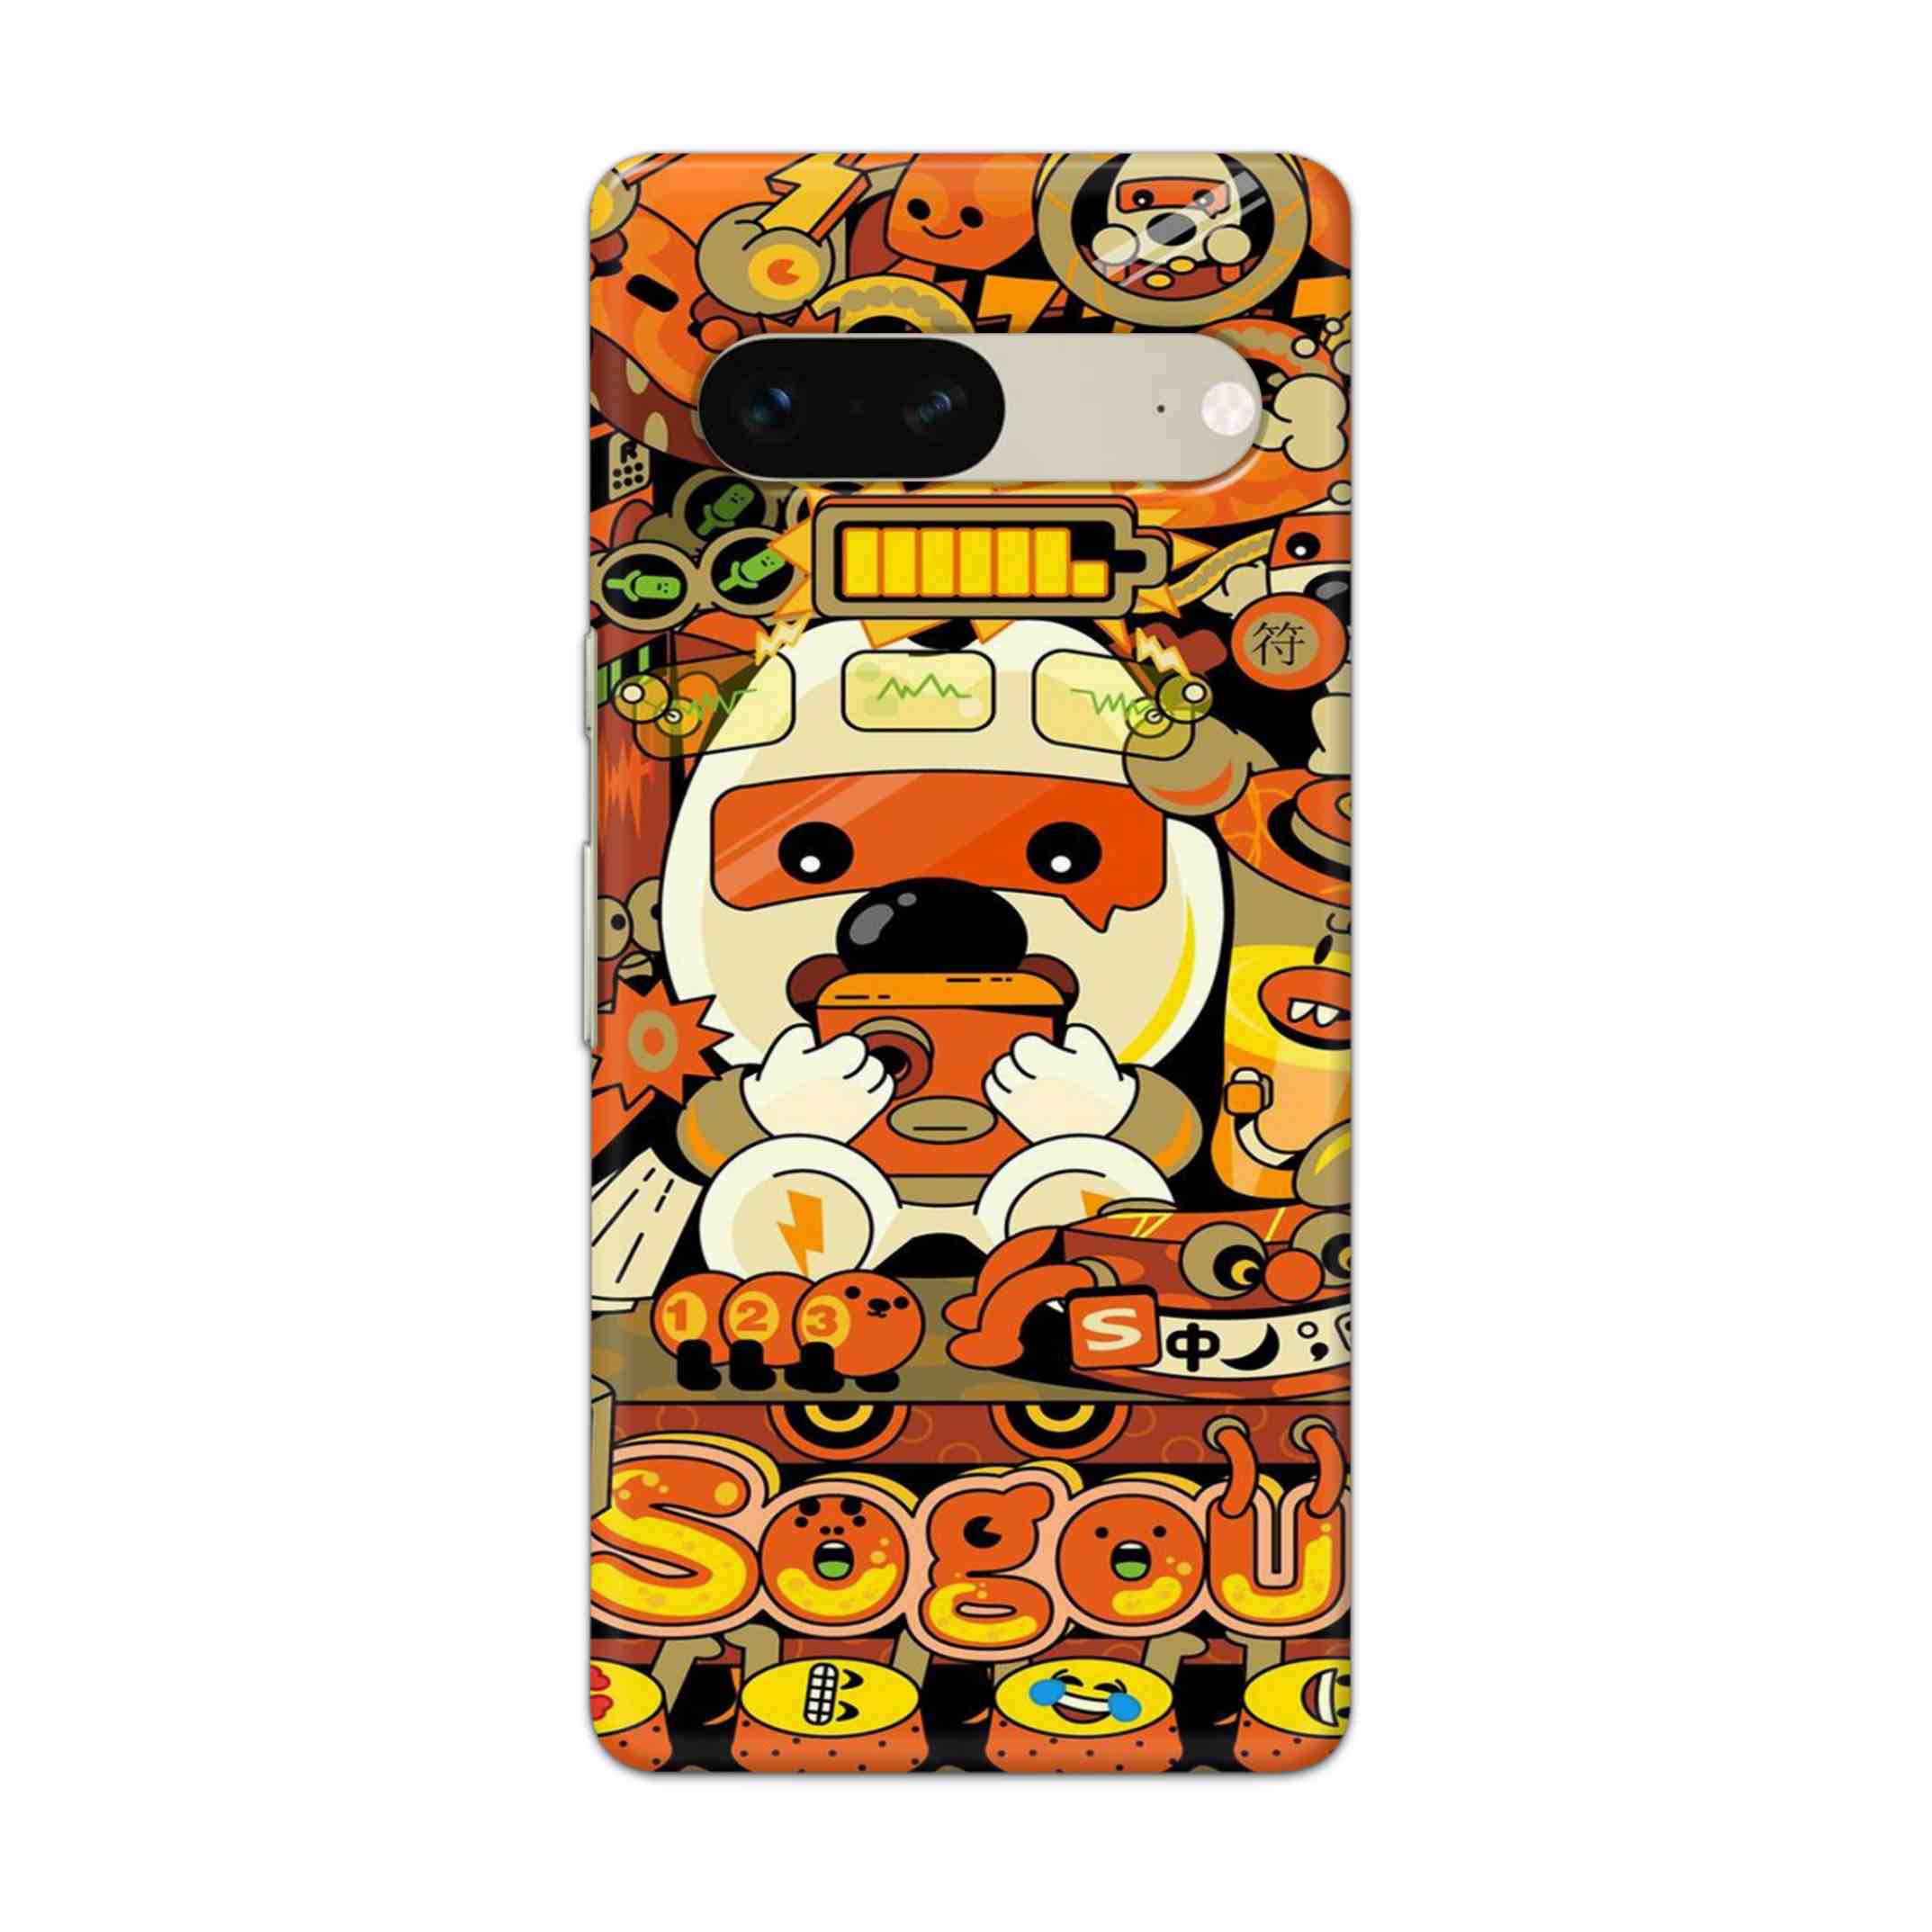 Buy Sogou Hard Back Mobile Phone Case Cover For Google Pixel 7 Online